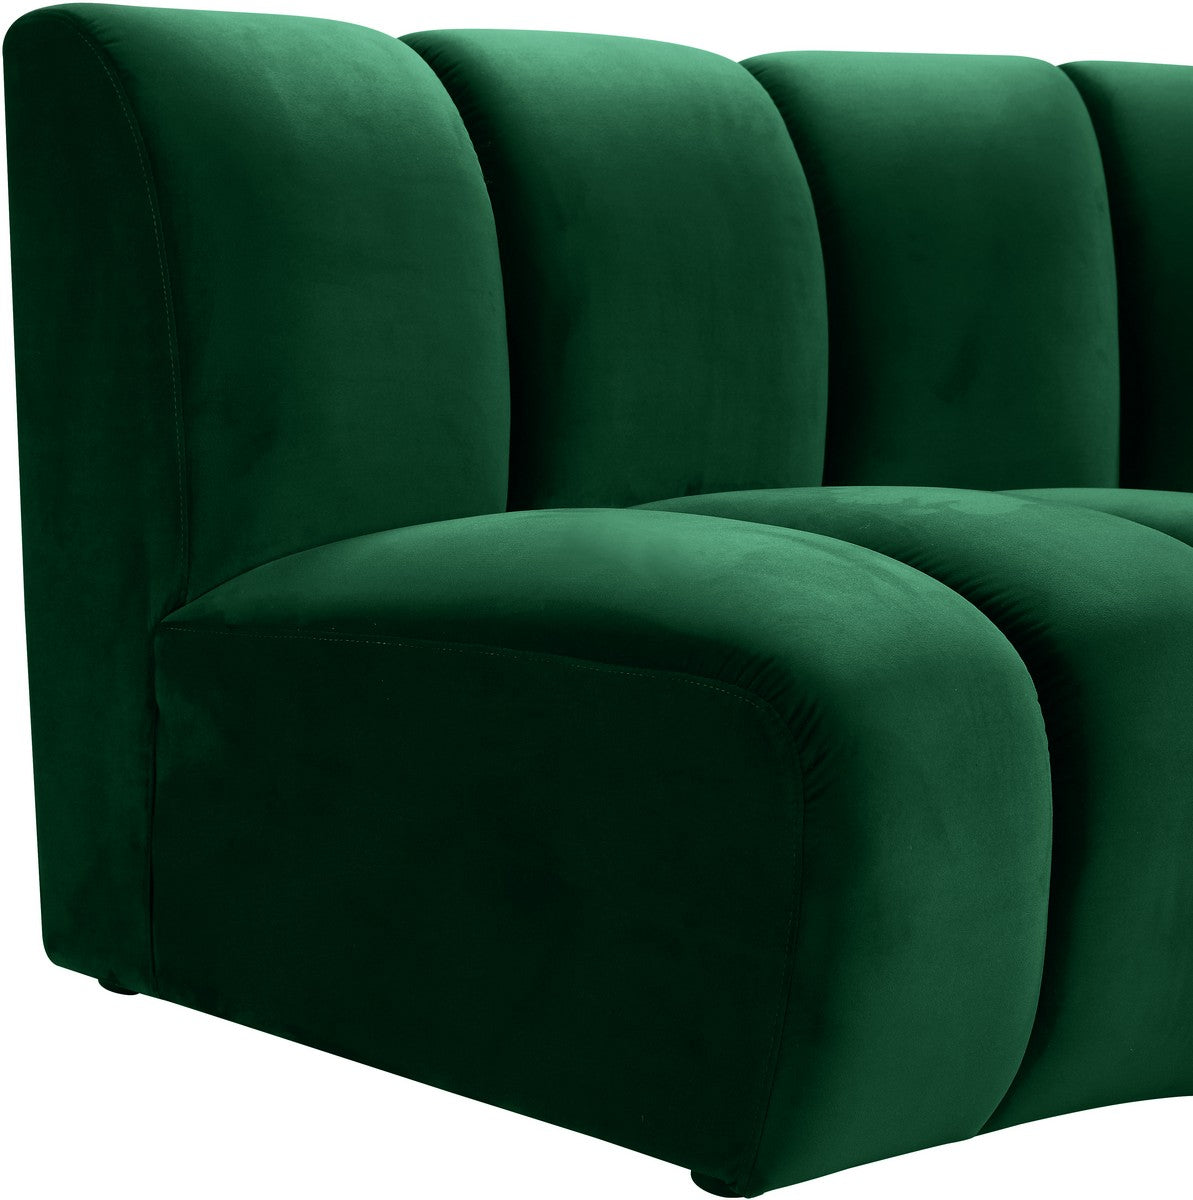 Meridian Furniture Infinity Green Velvet 4pc. Modular Sectional